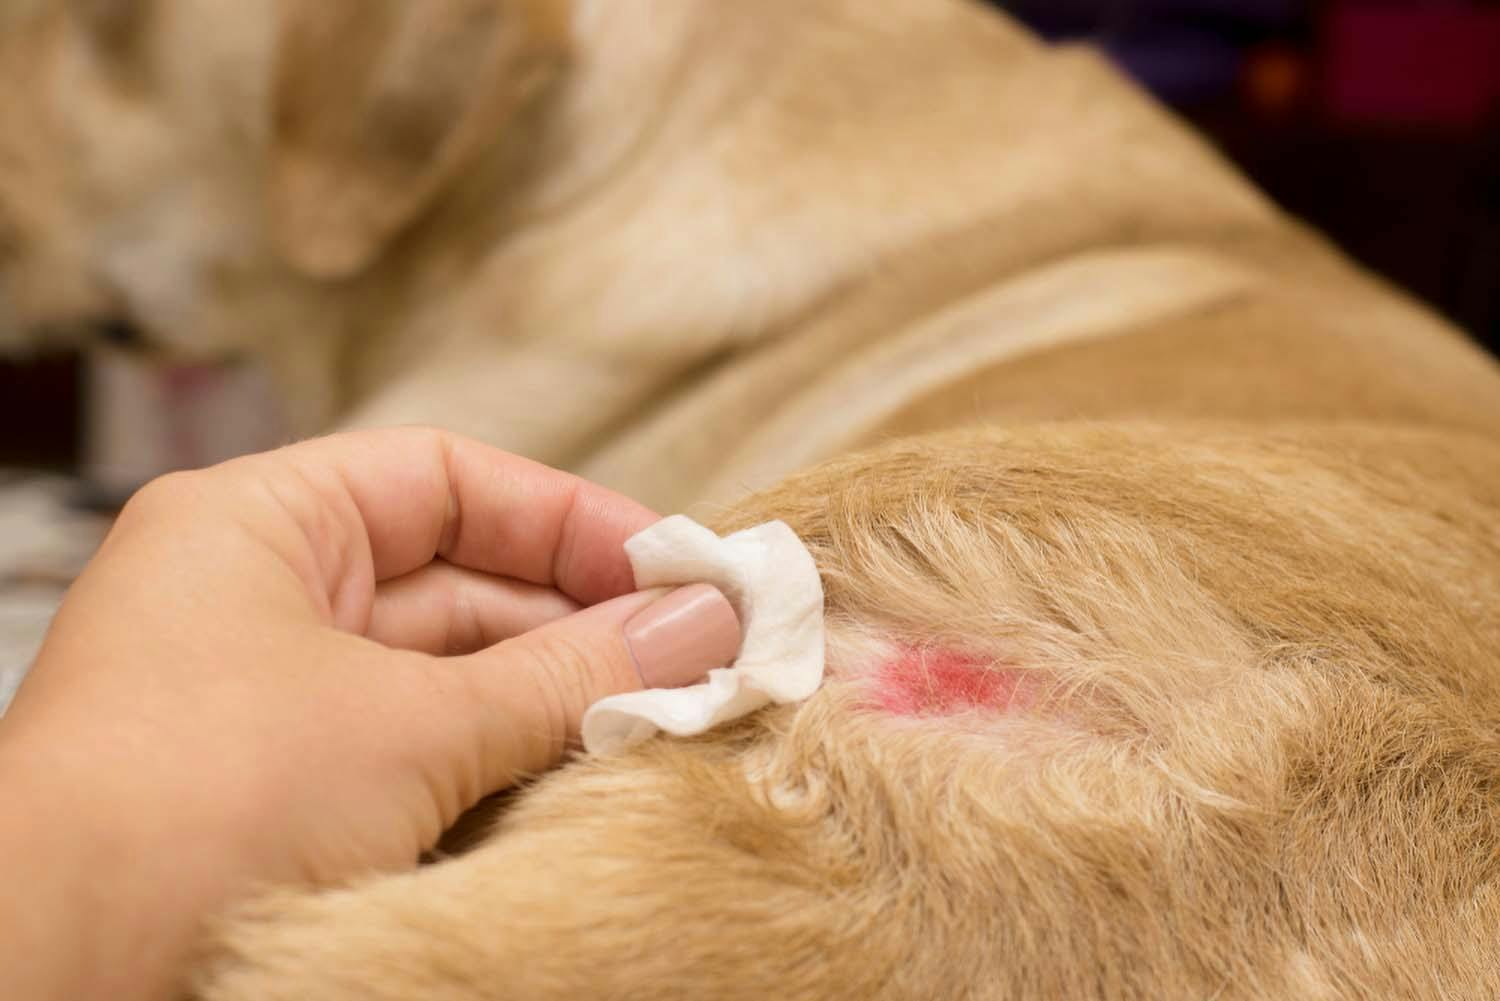 獣医師監修 換毛期以外での犬の抜け毛の原因とは 考えられる病気と対処法について解説 Illness 病気 わんクォール